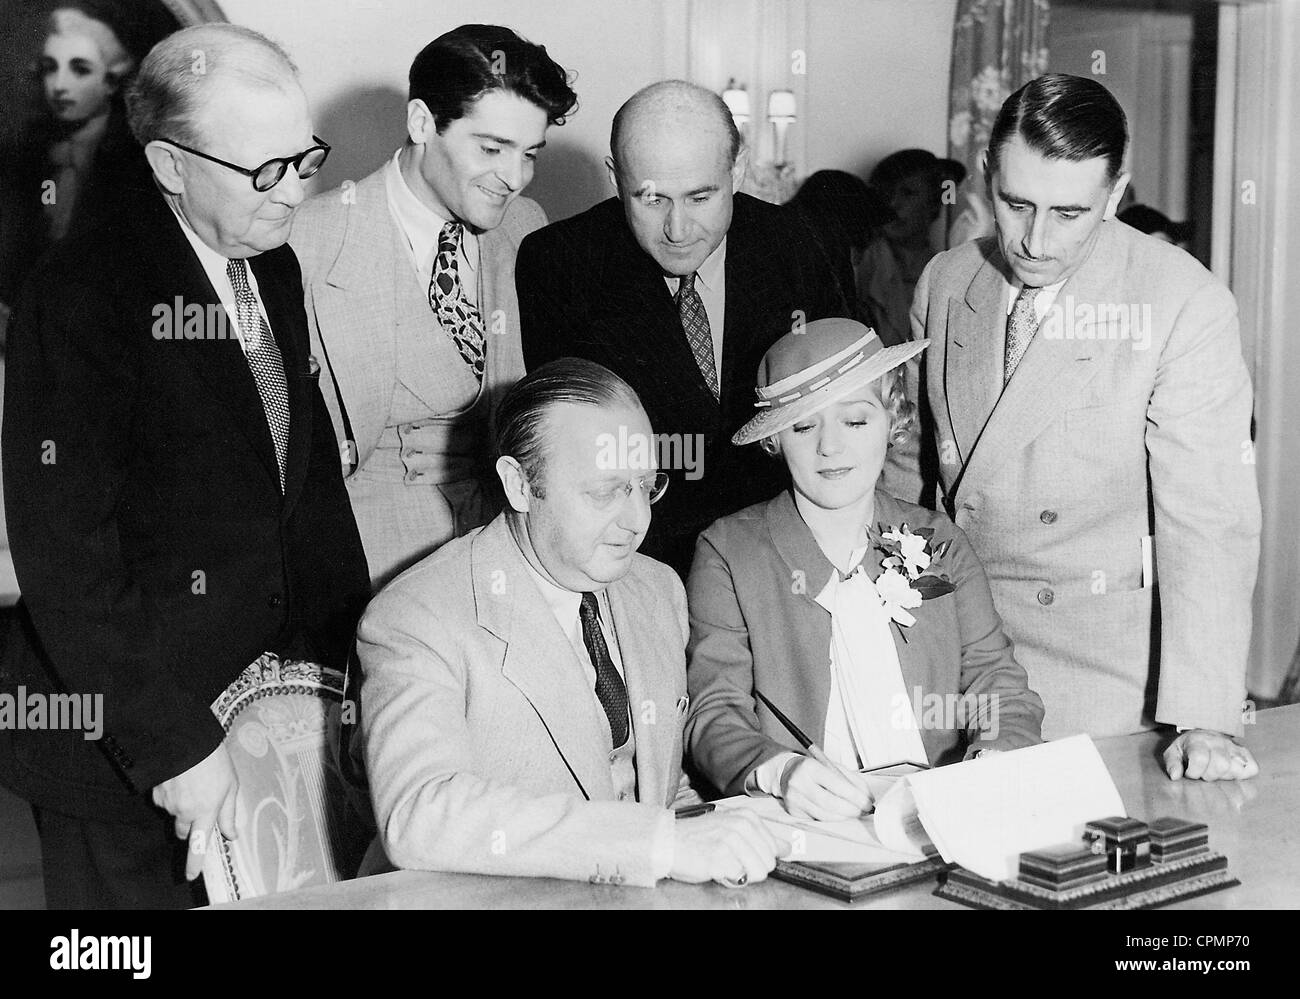 Lloyd Wright, Francis Lederer, Samuel Goldwyn, N.D. McKay, Jesse Lasky et Mary Pickford, 1935 Banque D'Images